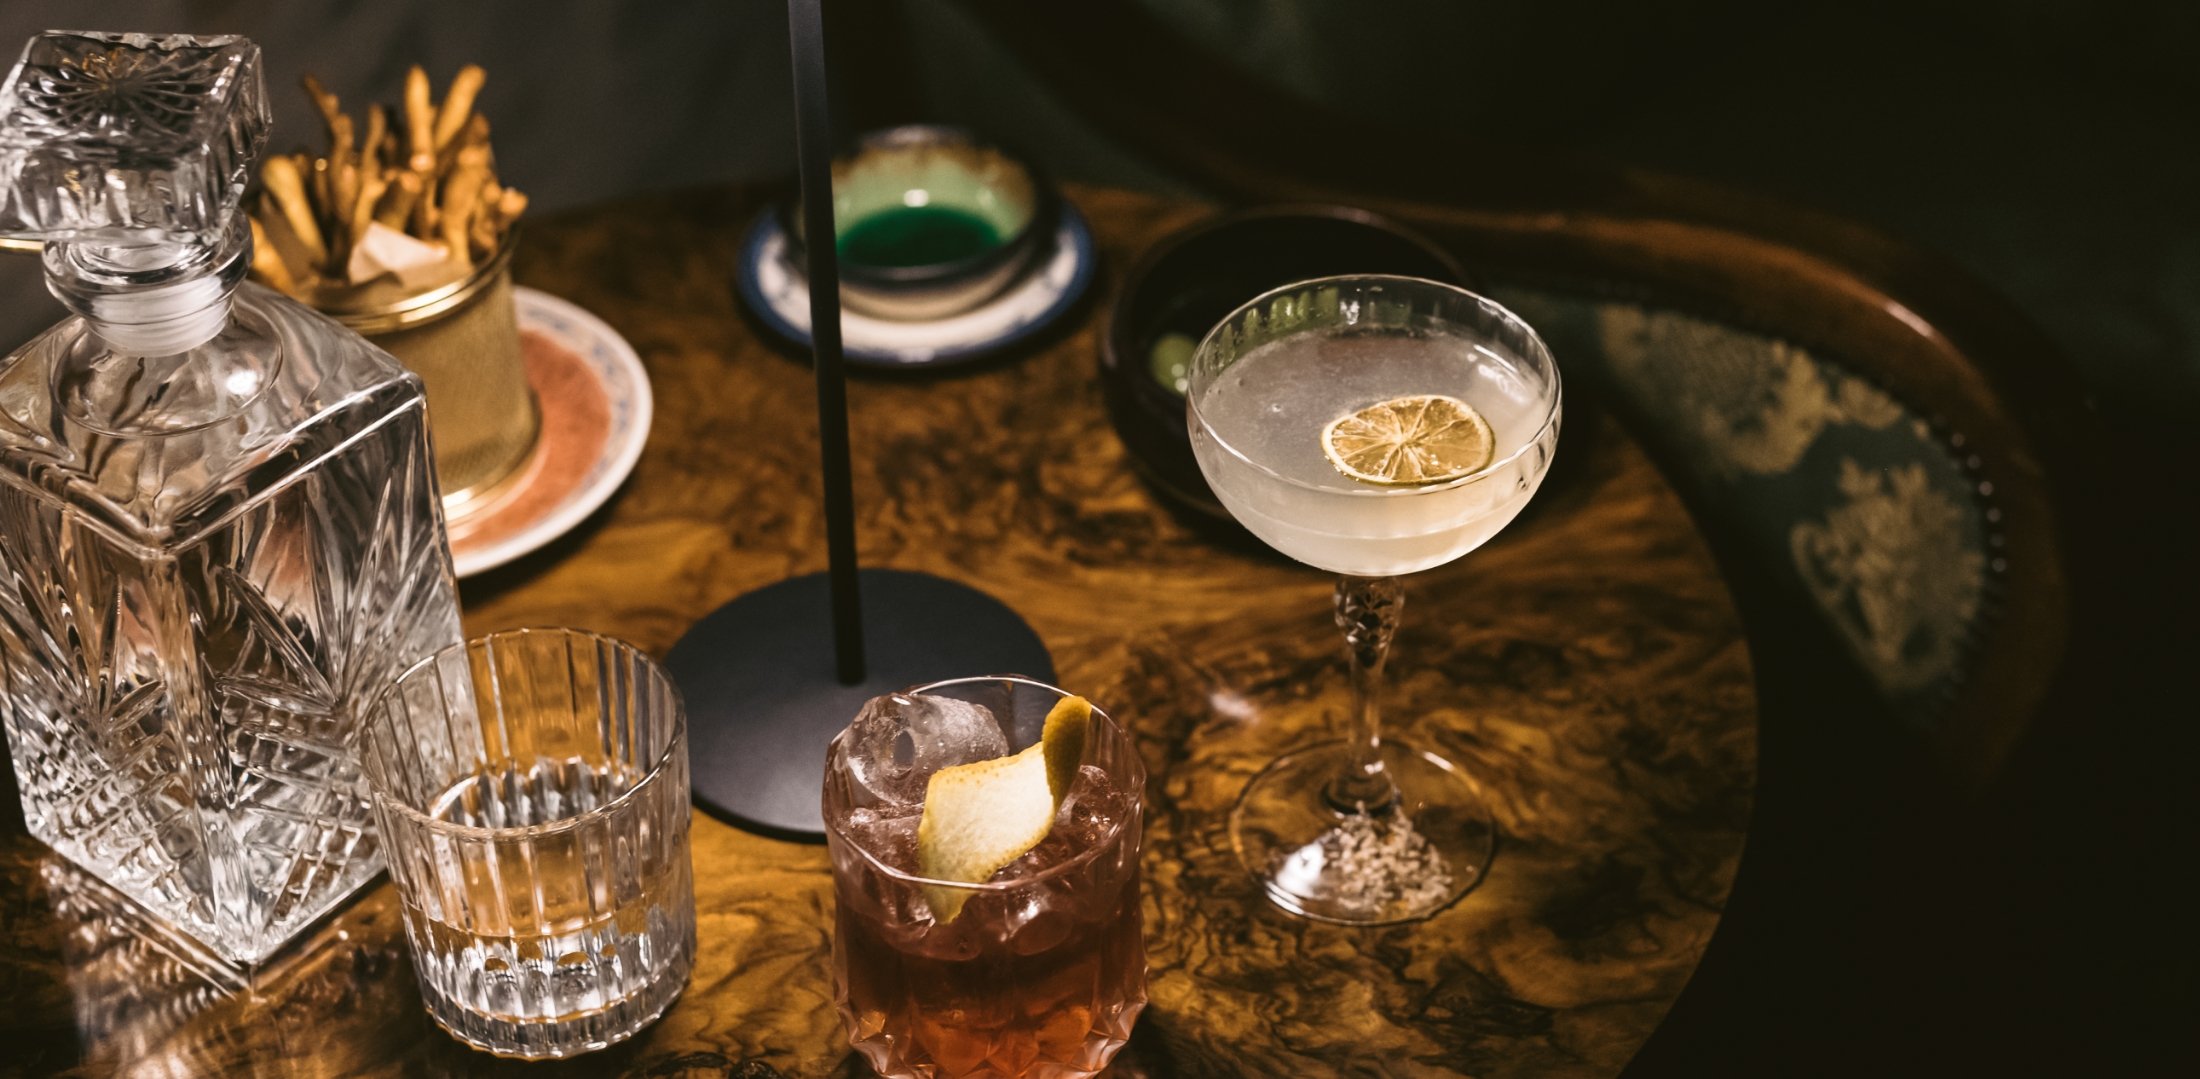 KAA Mixology cocktail bar - premium cocktails